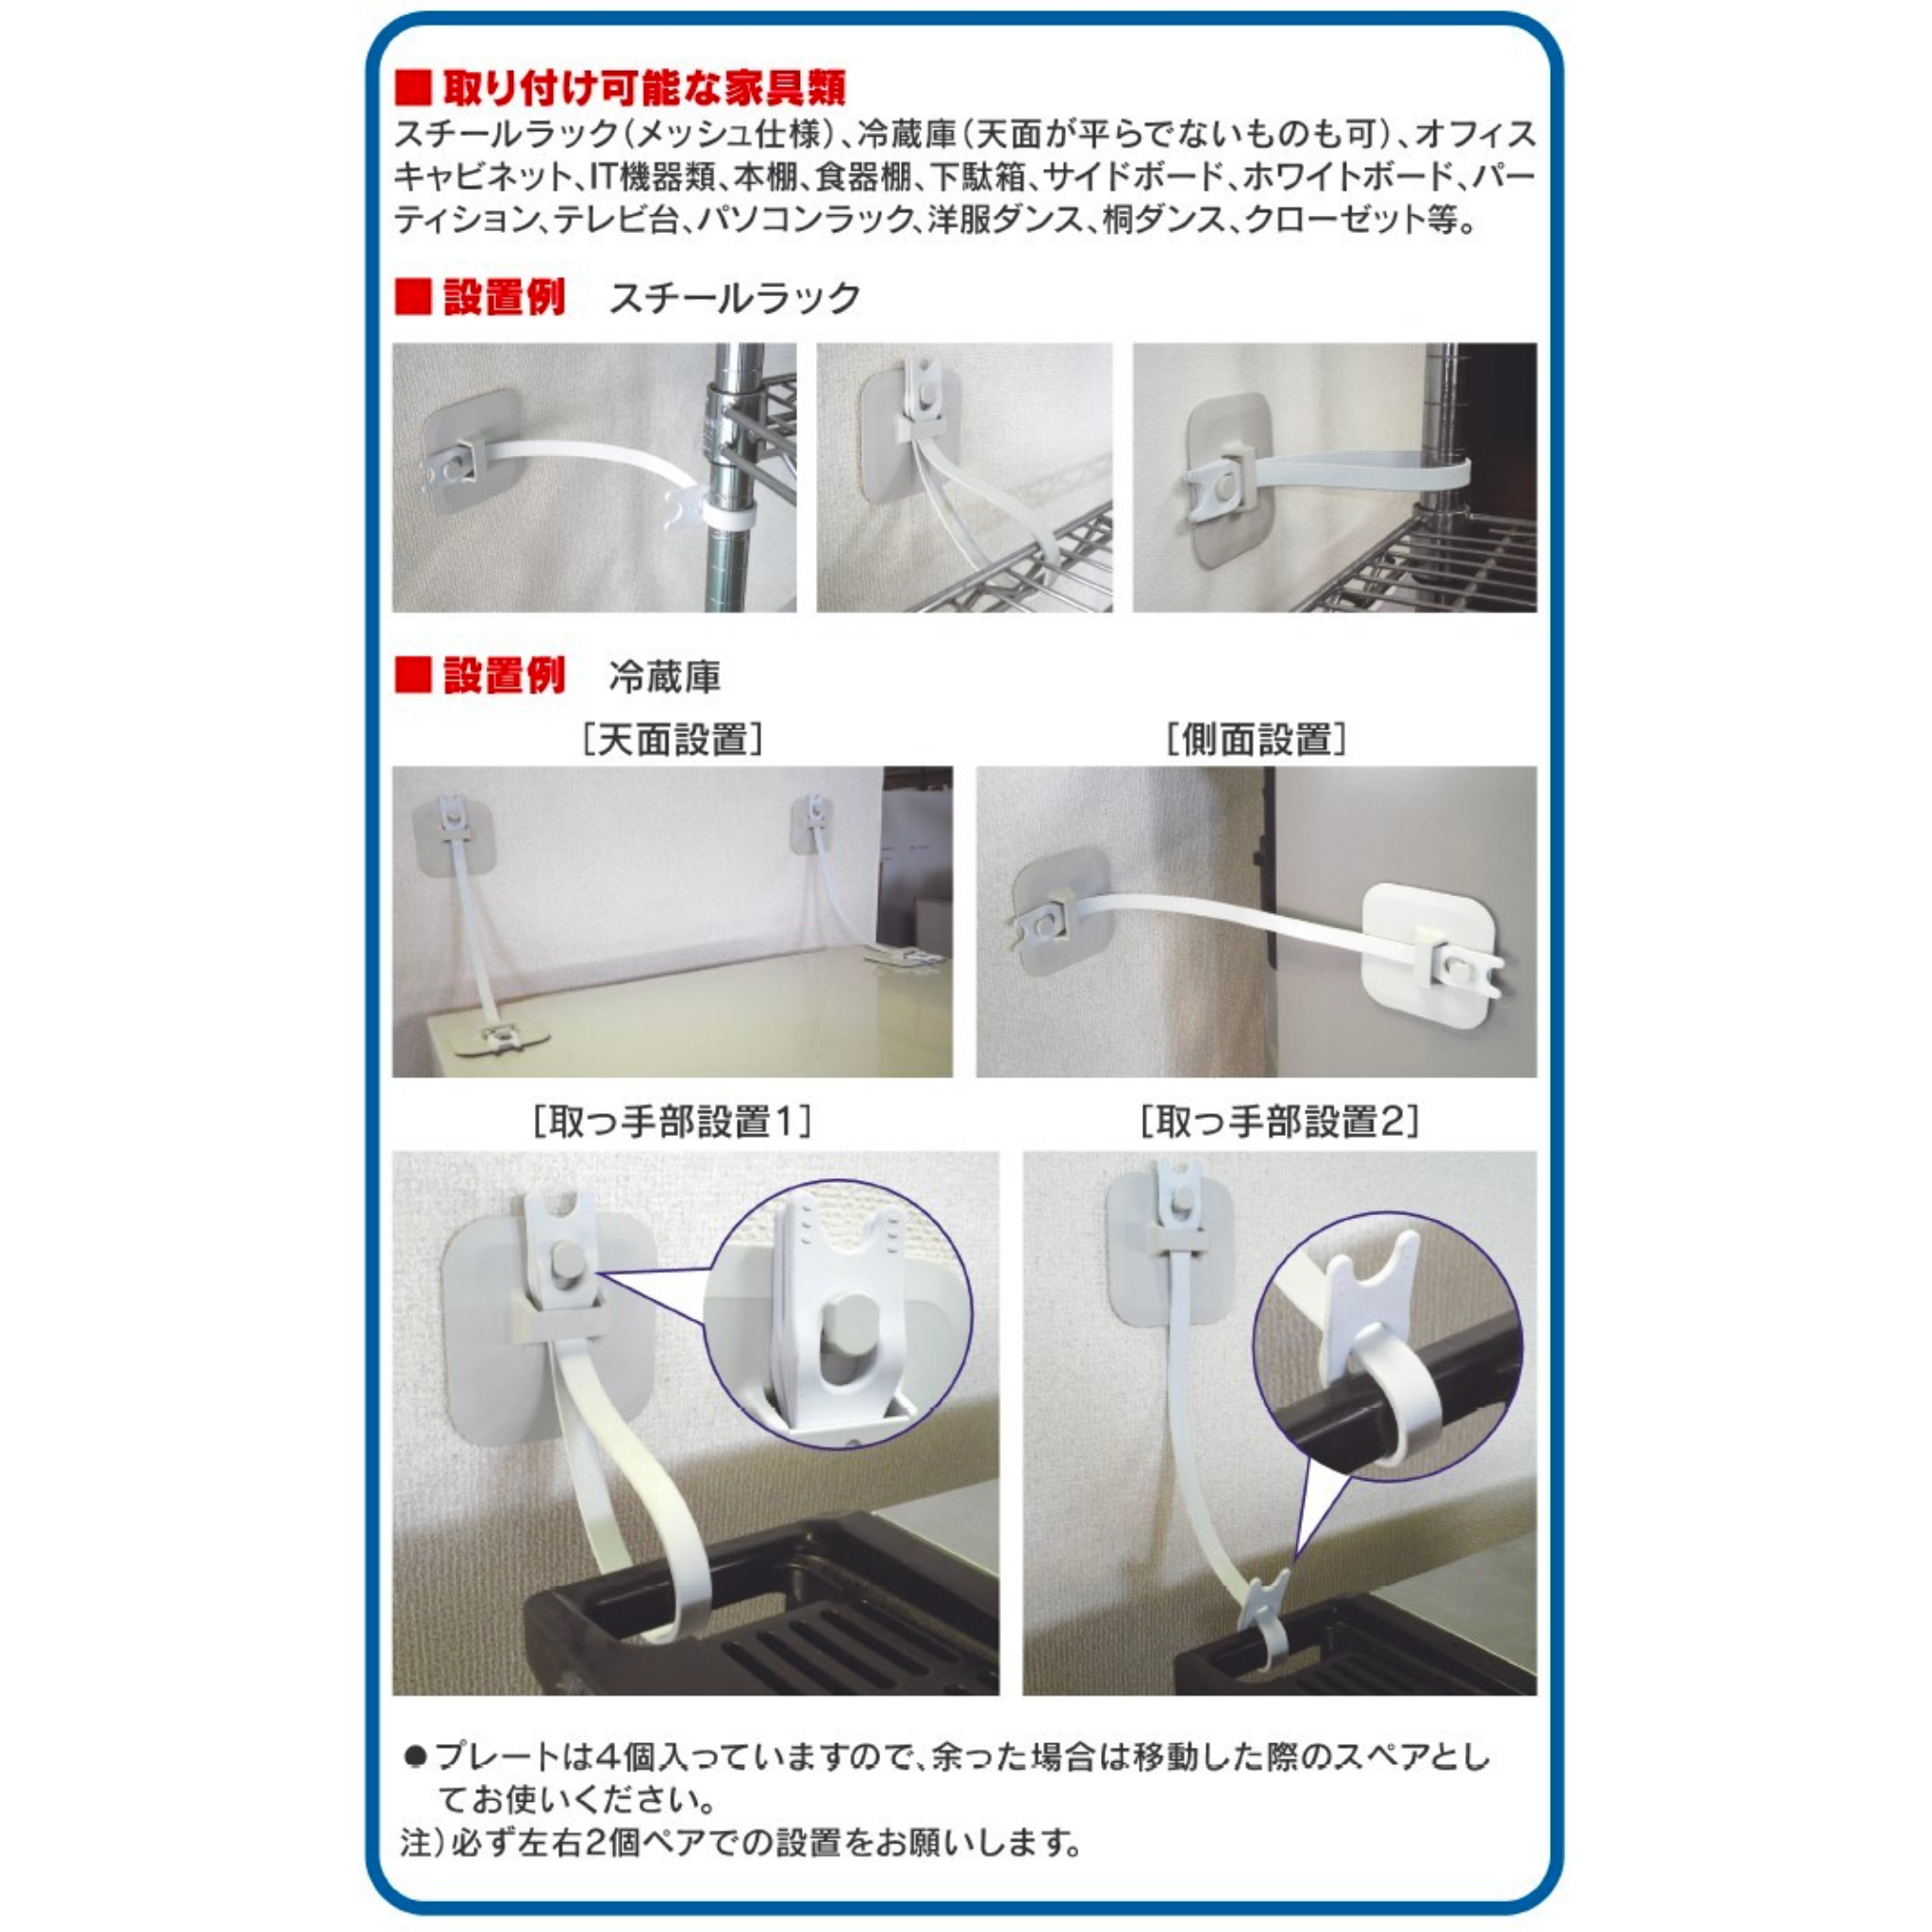 三菱電機株式会社 冷蔵庫用 転倒防止ベルト MRPR-02BL 海外 - 家具転倒防止用品